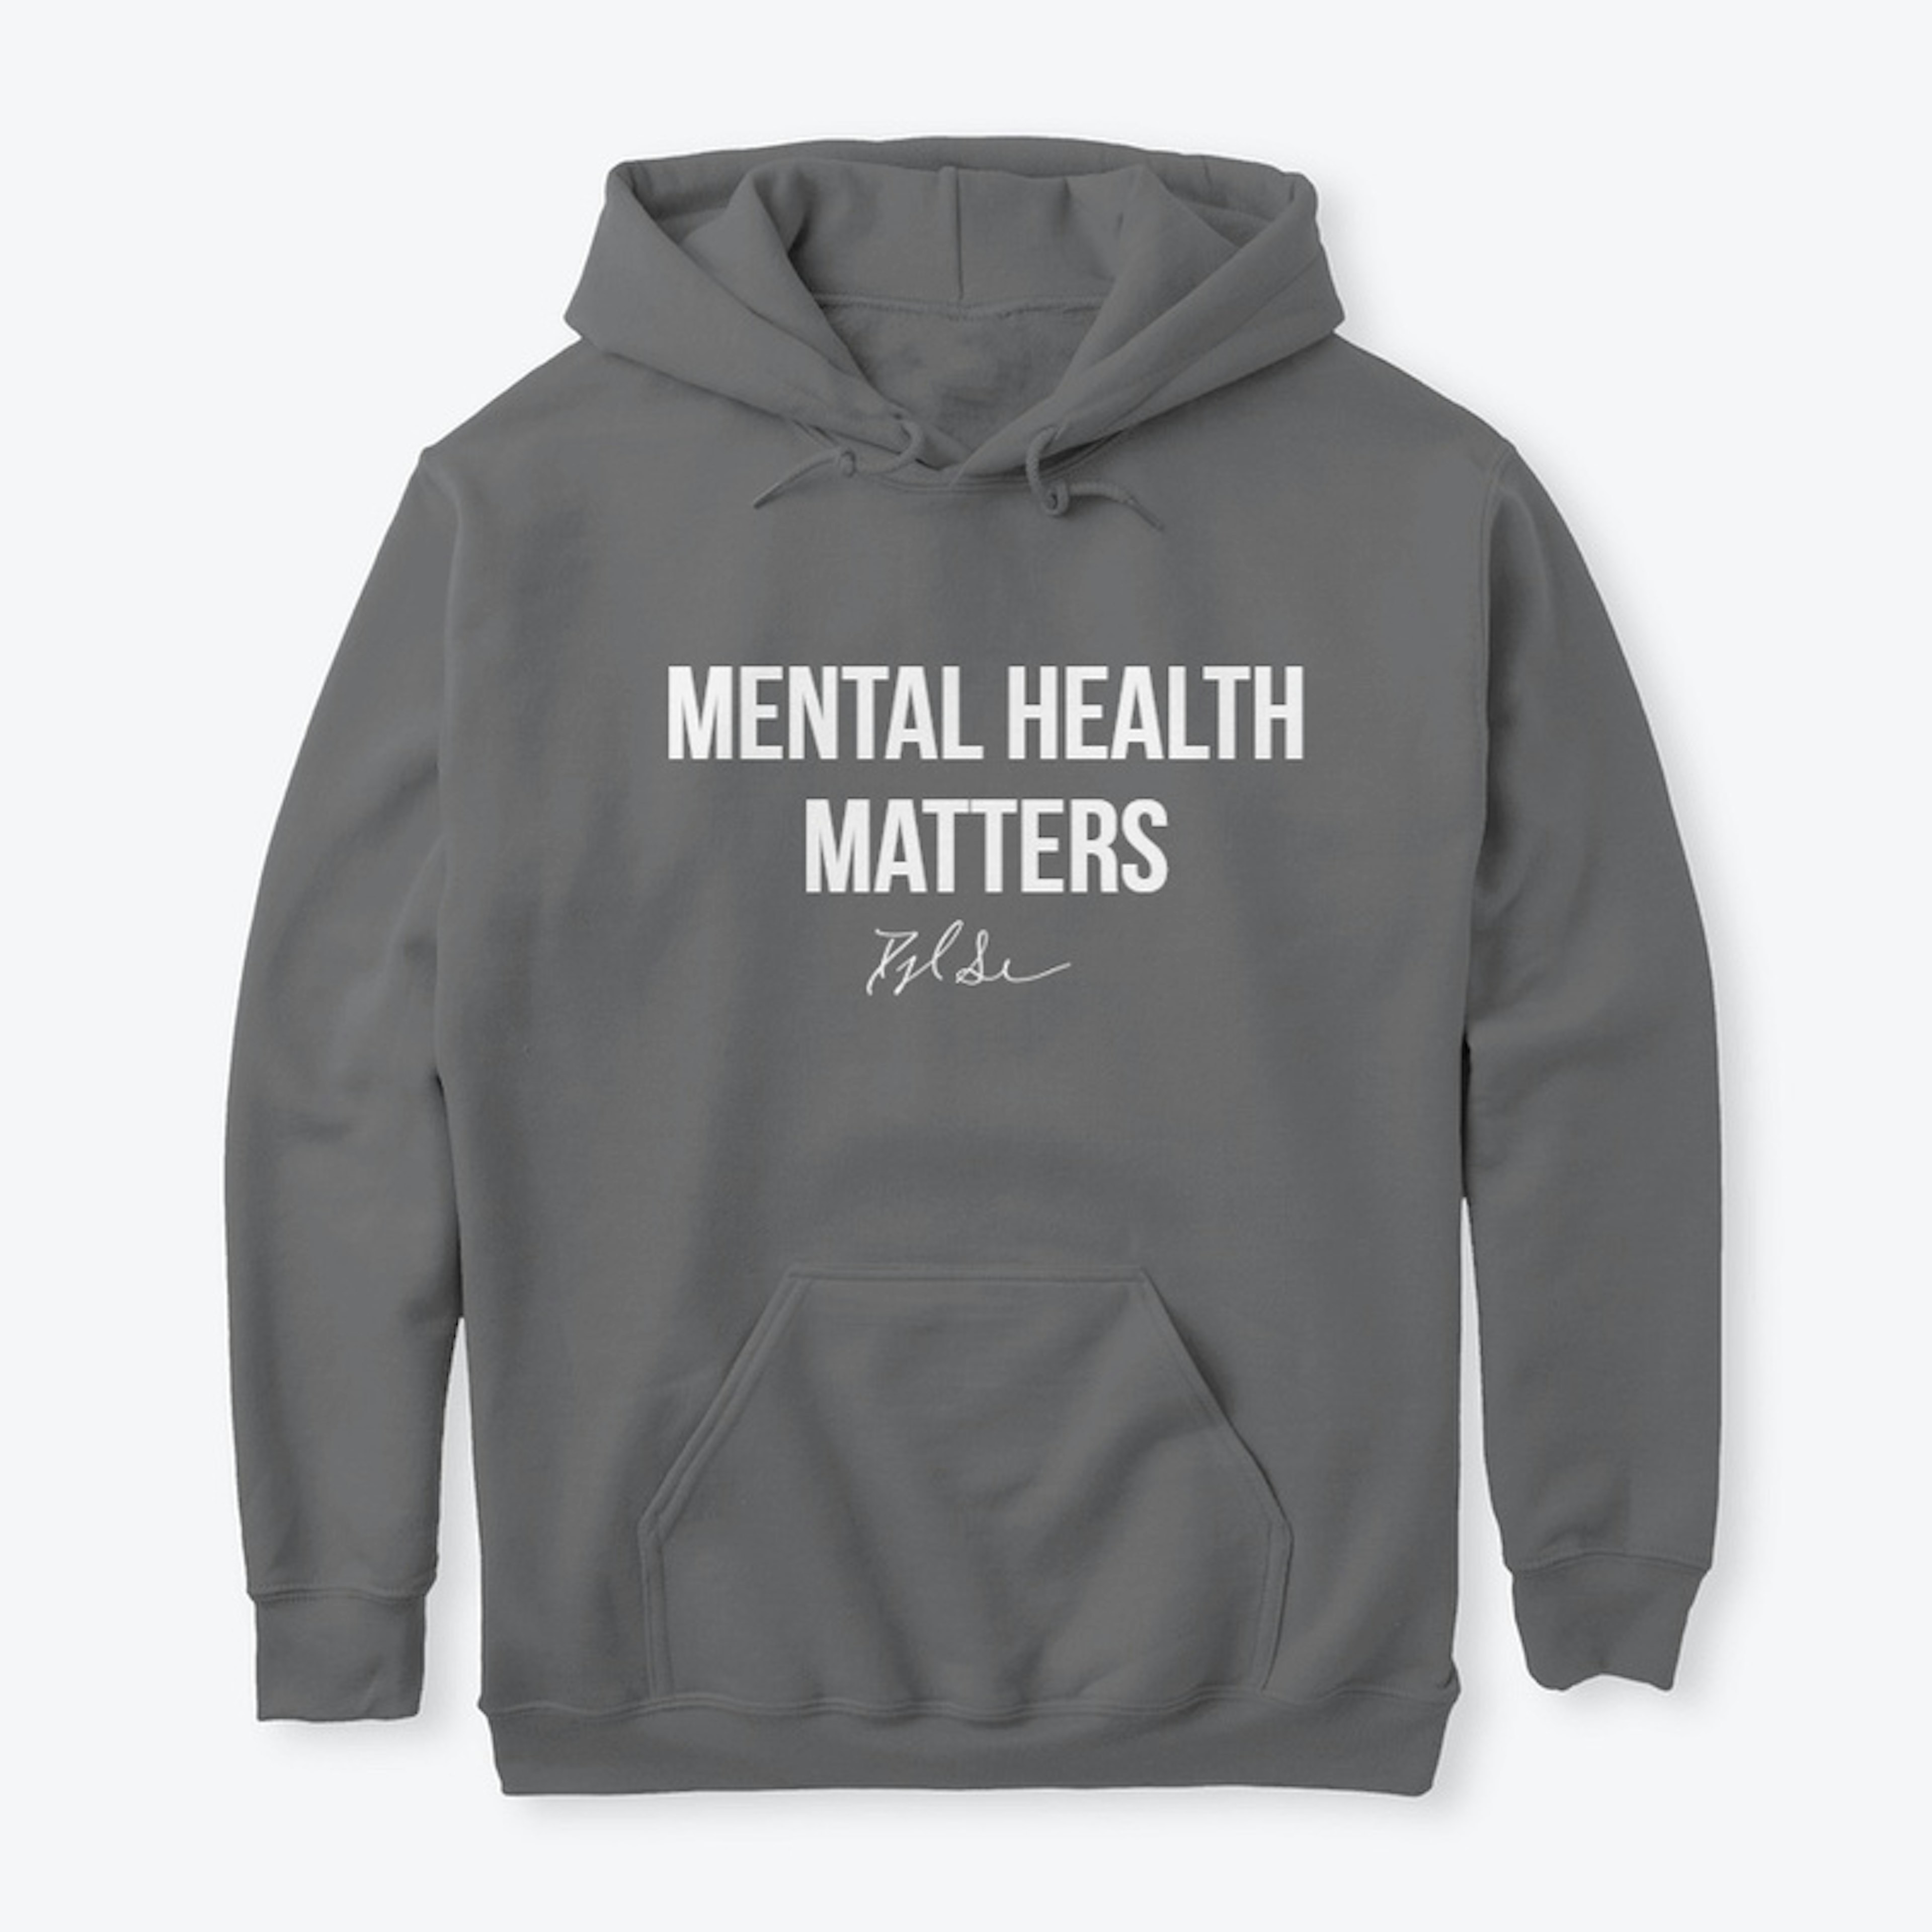 Mental Health Matters by Dylan Sessler